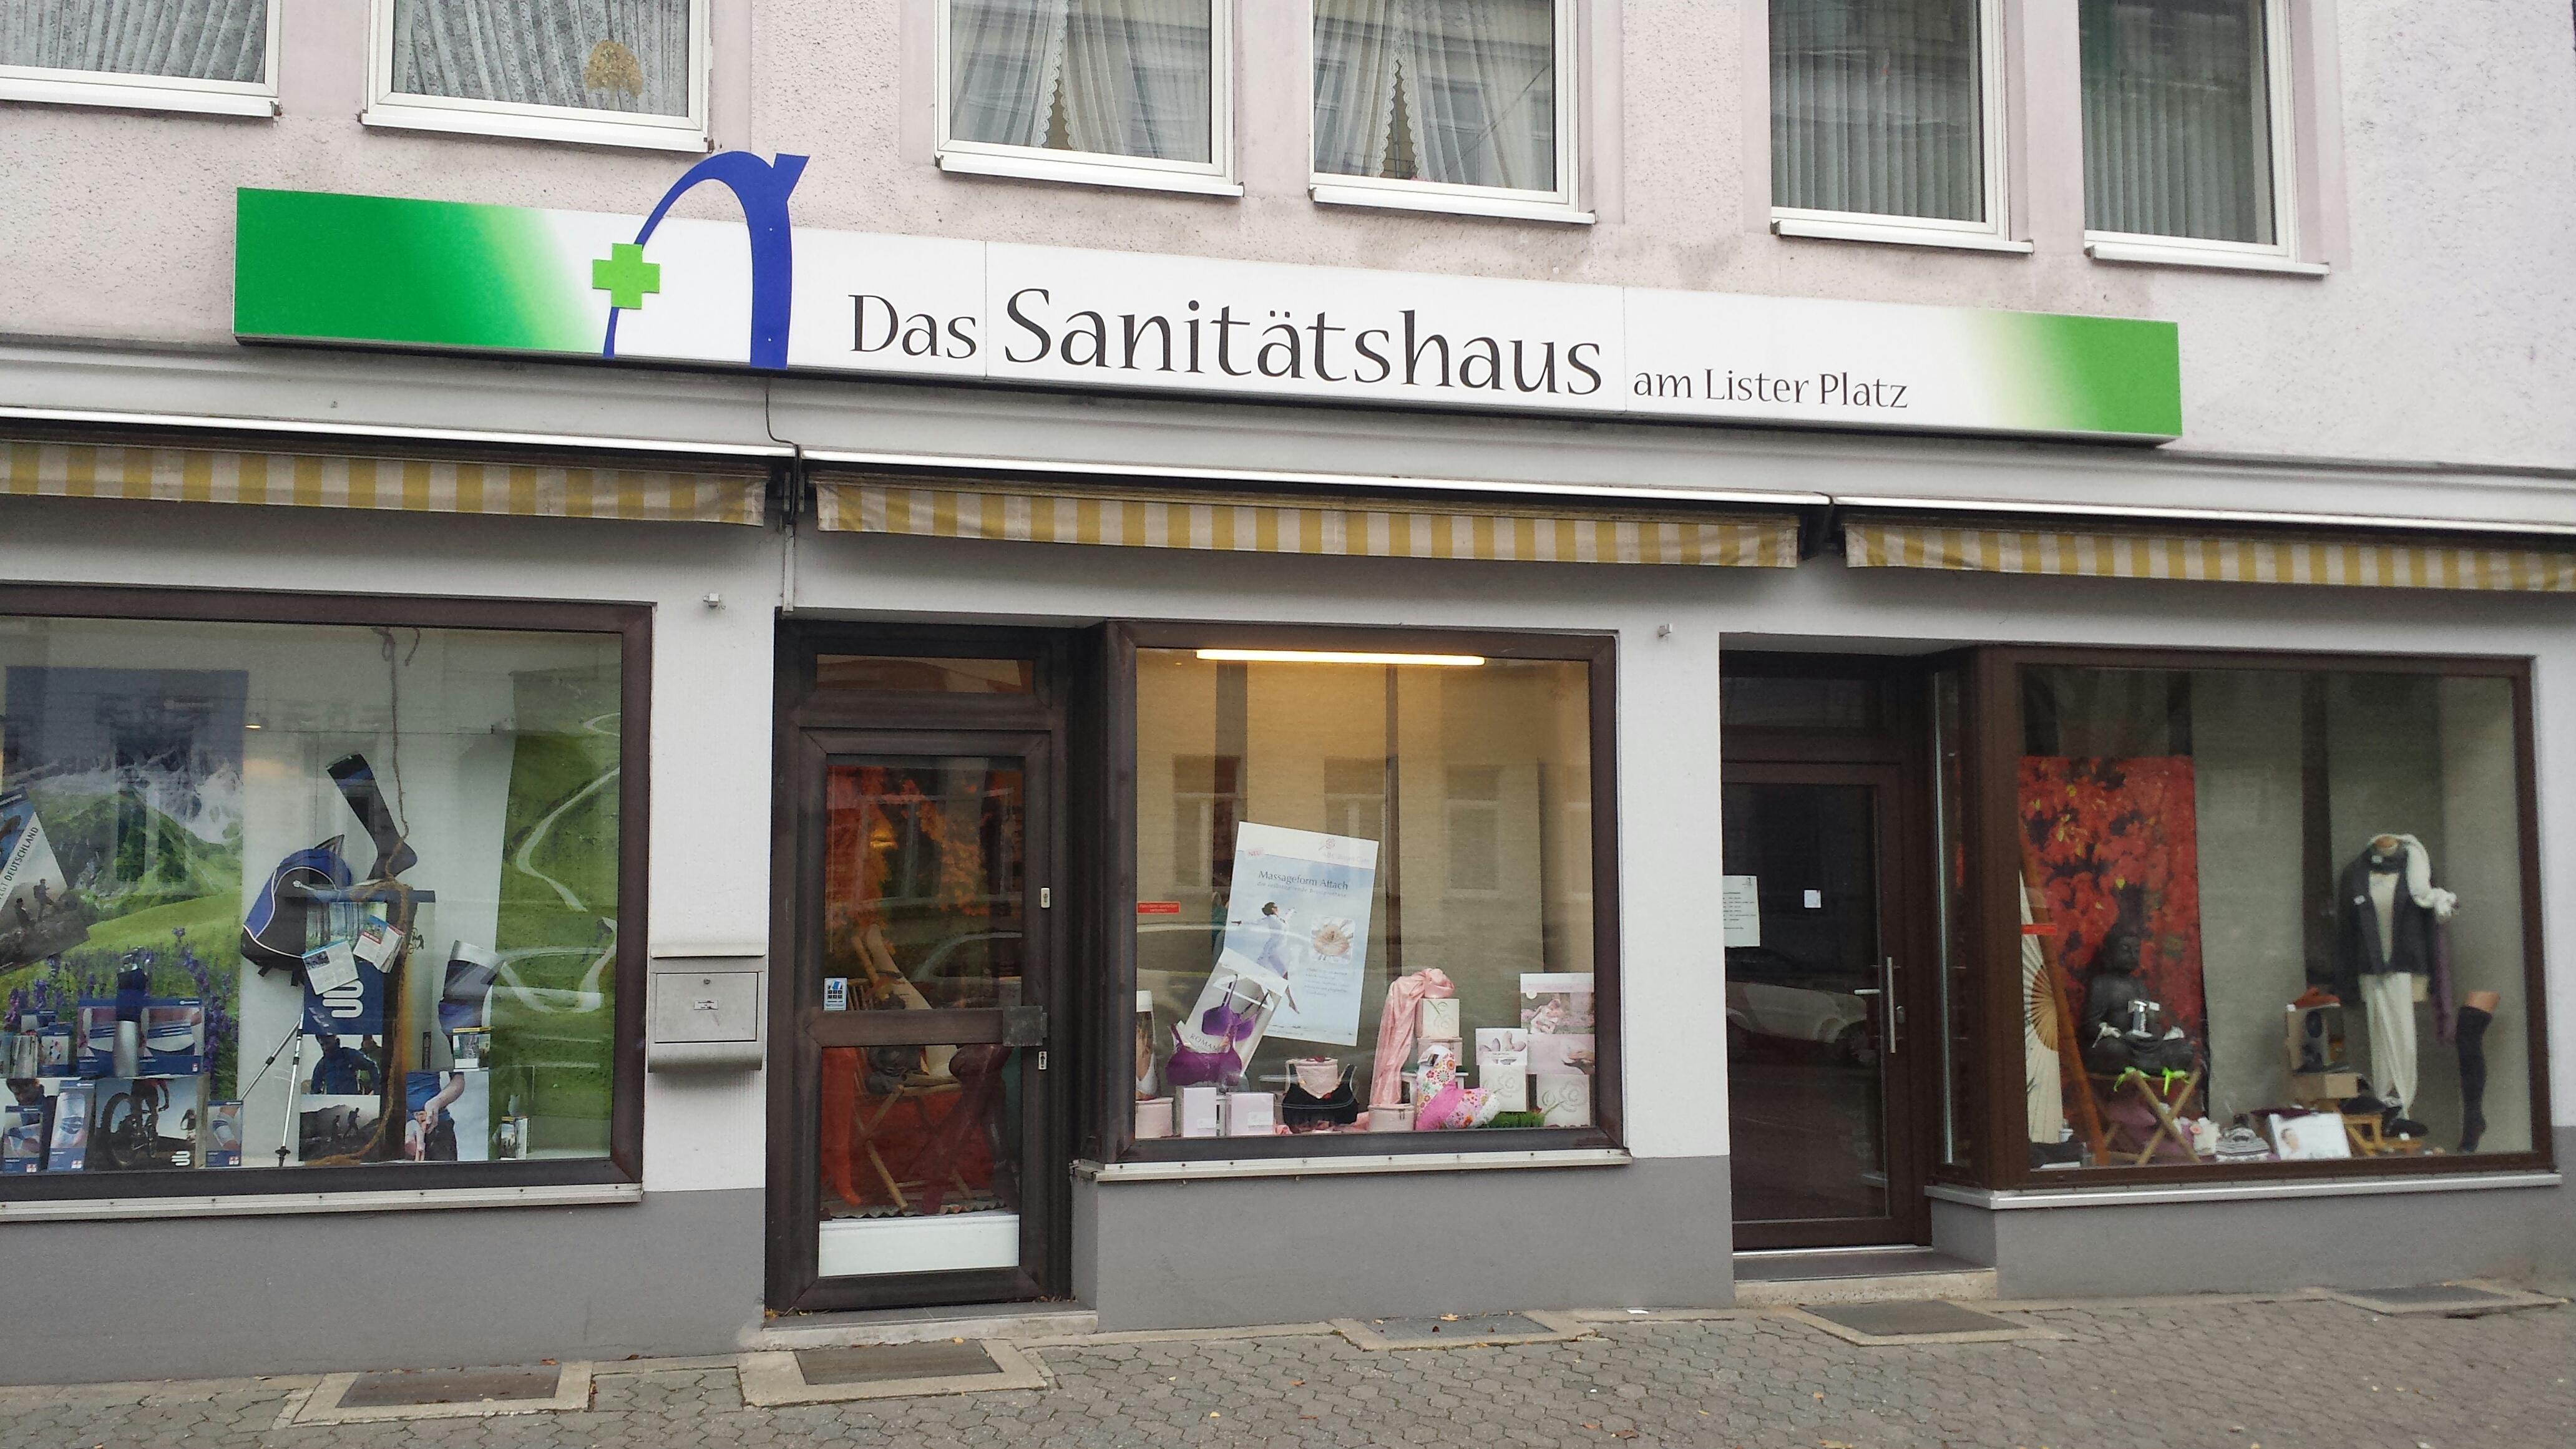 Bild 1 Das Sanitätshaus am Lister Platz GmbH & Co. KG in Hannover